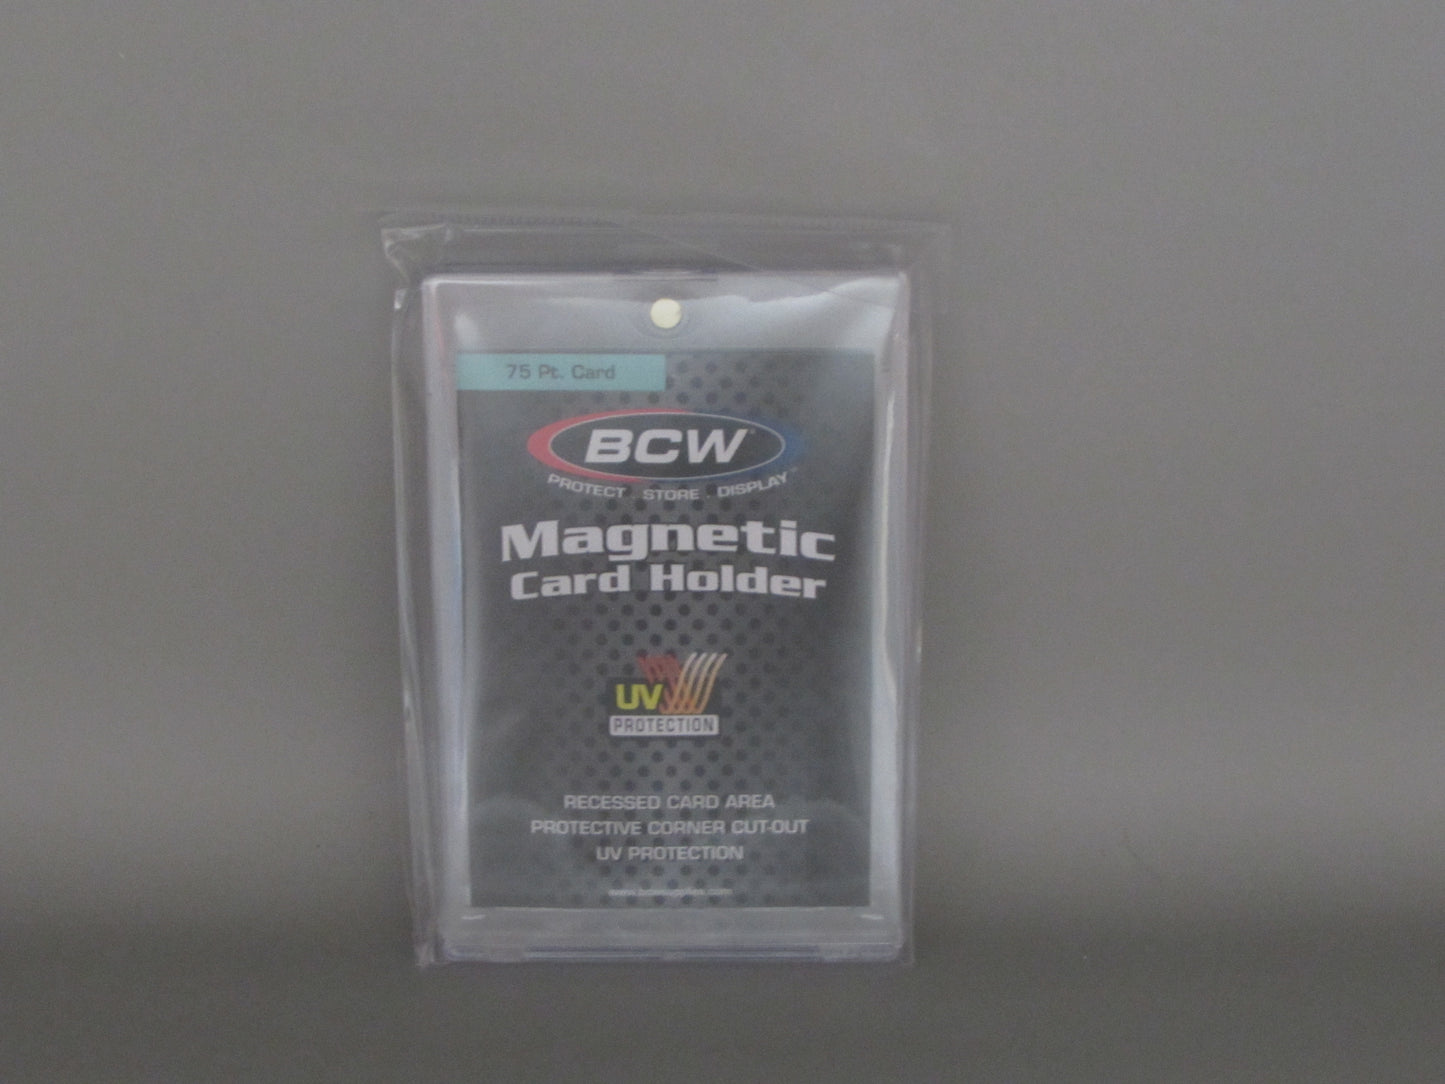 BCW 75pt magnetic card holder